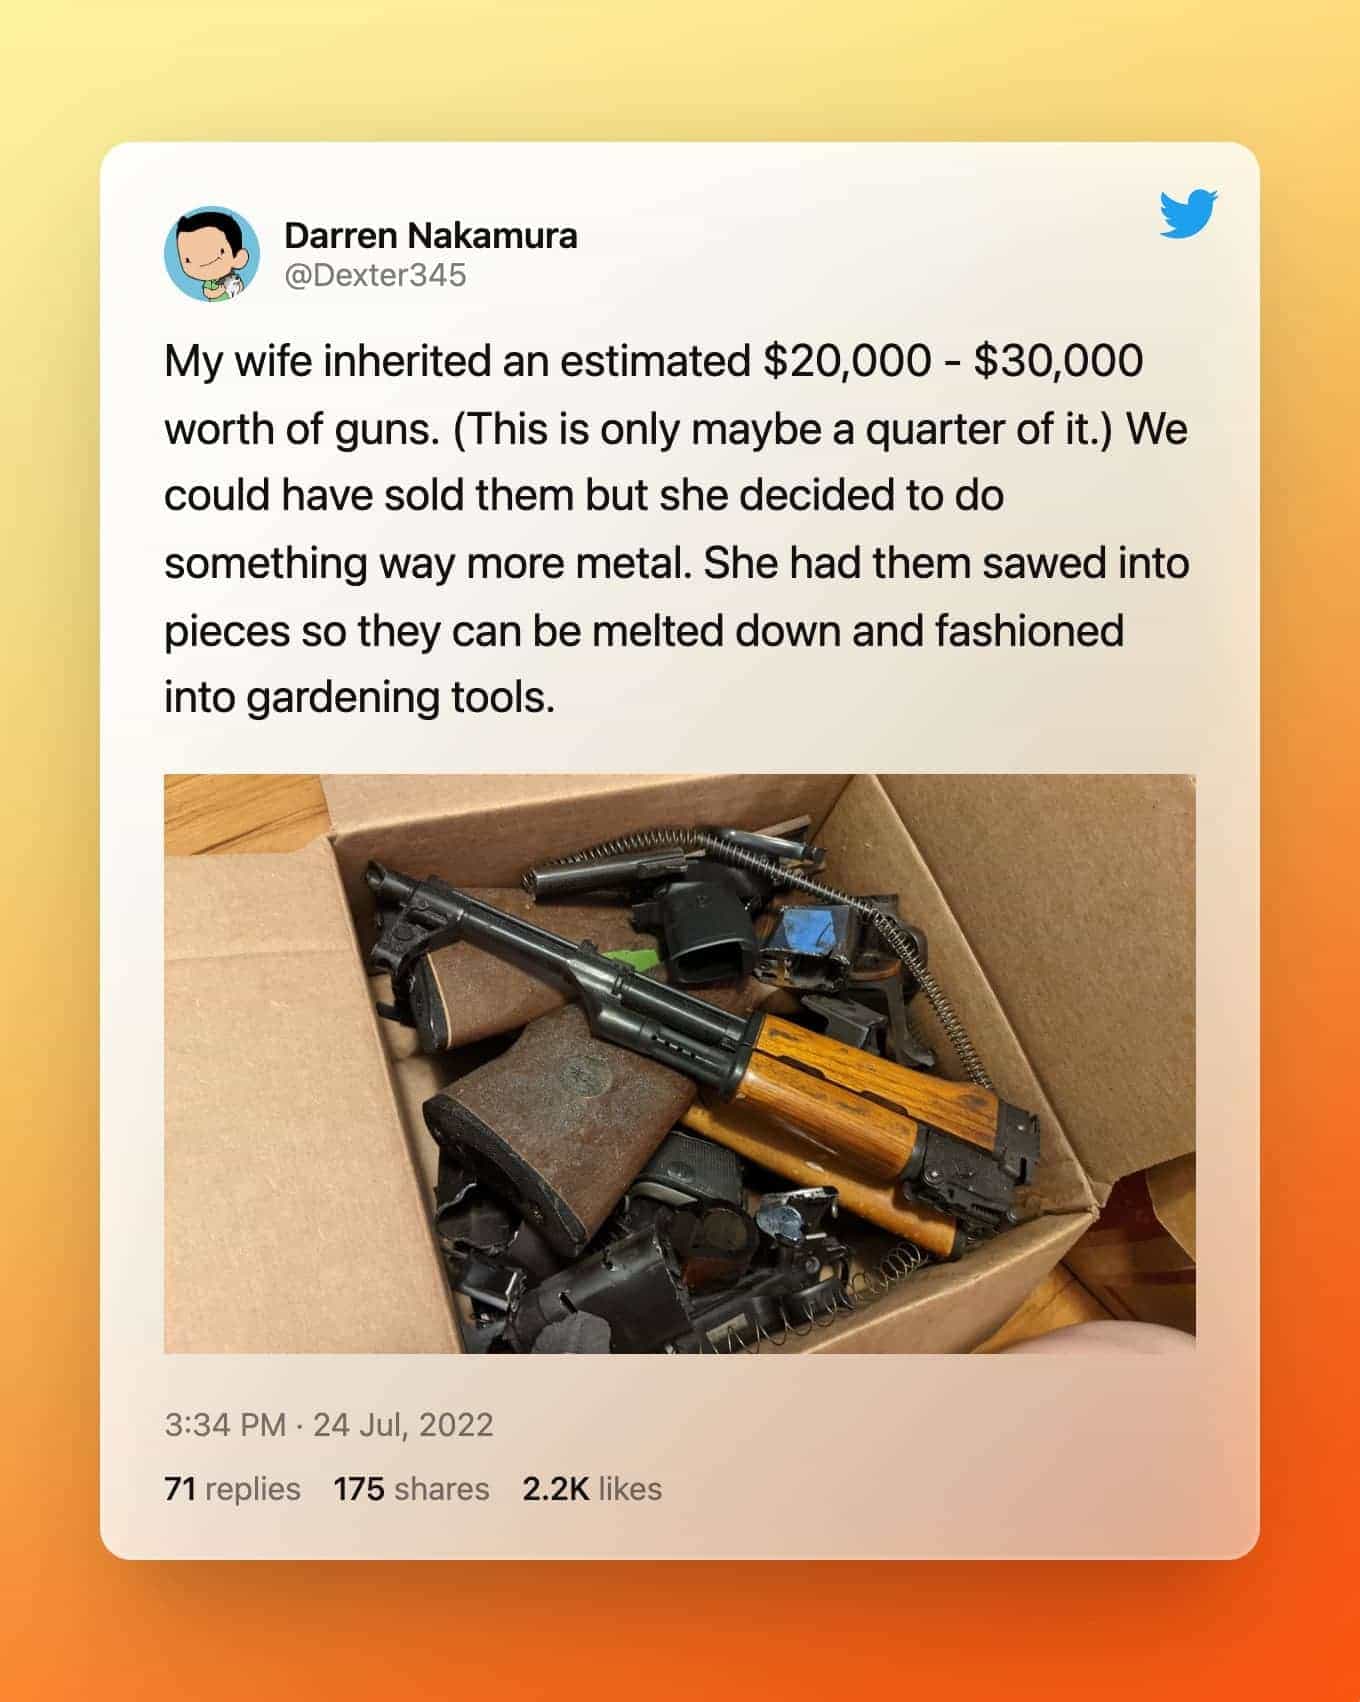 @Dexter345 op Twitter: mijn vrouw erfde naar schatting $ 20.000 - $ 30.000 aan wapens. (Dit is misschien maar een kwart ervan.) We hadden ze kunnen verkopen, maar ze besloot iets veel meer metaal te doen. Ze liet ze in stukken zagen, zodat ze kunnen worden omgesmolten en omgevormd tot tuingereedschap.